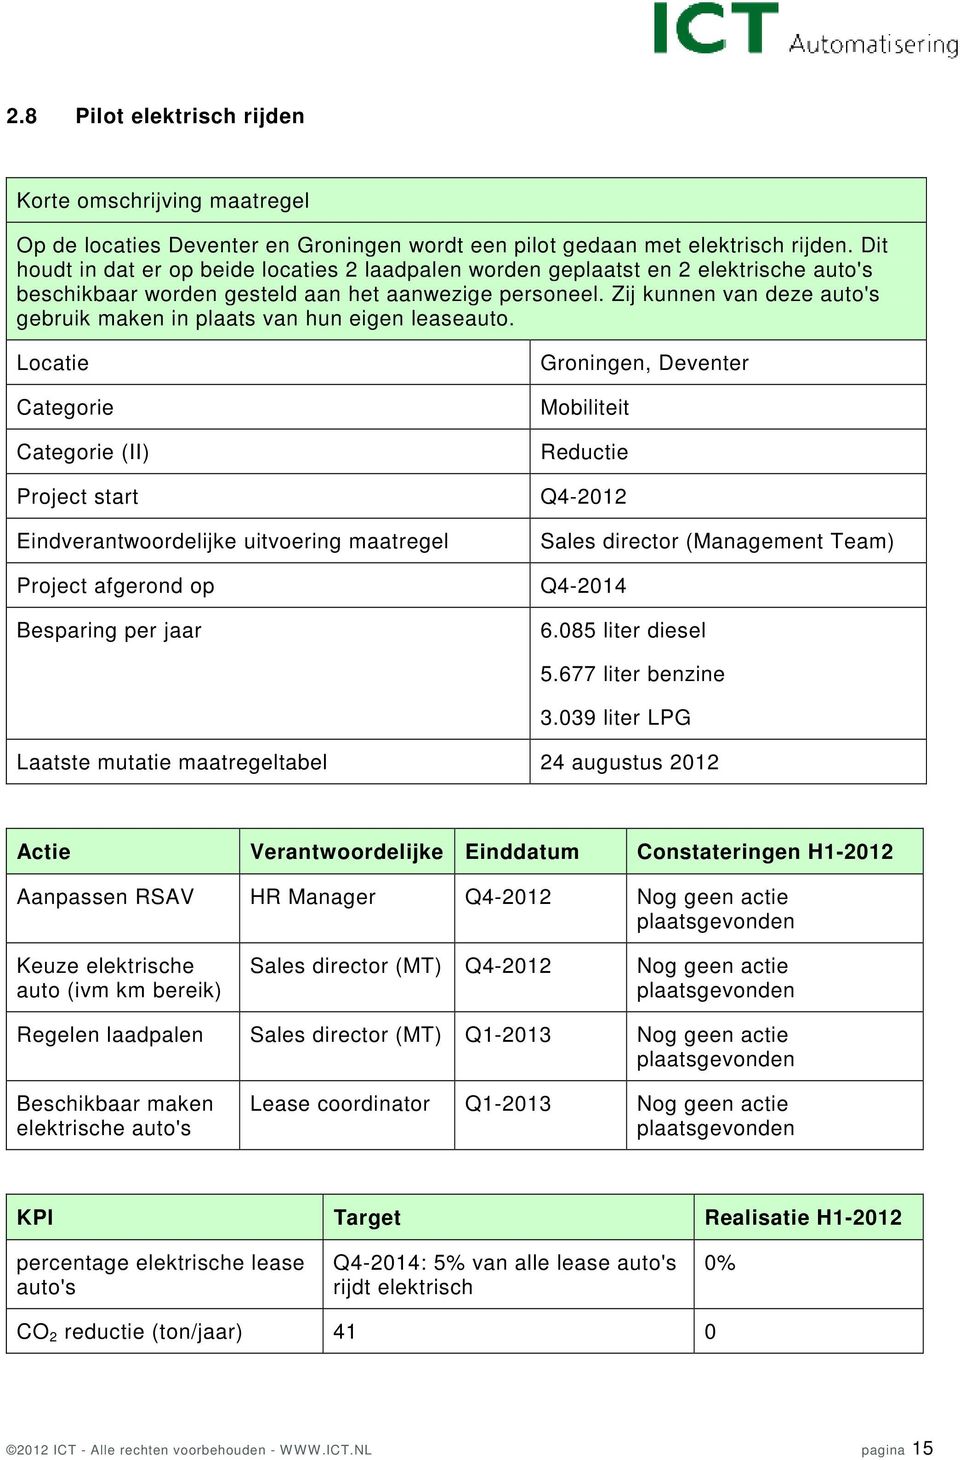 Zij kunnen van deze auto's gebruik maken in plaats van hun eigen leaseauto. Groningen, Deventer Mobiliteit Project start Q4-2012 Sales director (Management Team) Project afgerond op Q4-2014 6.